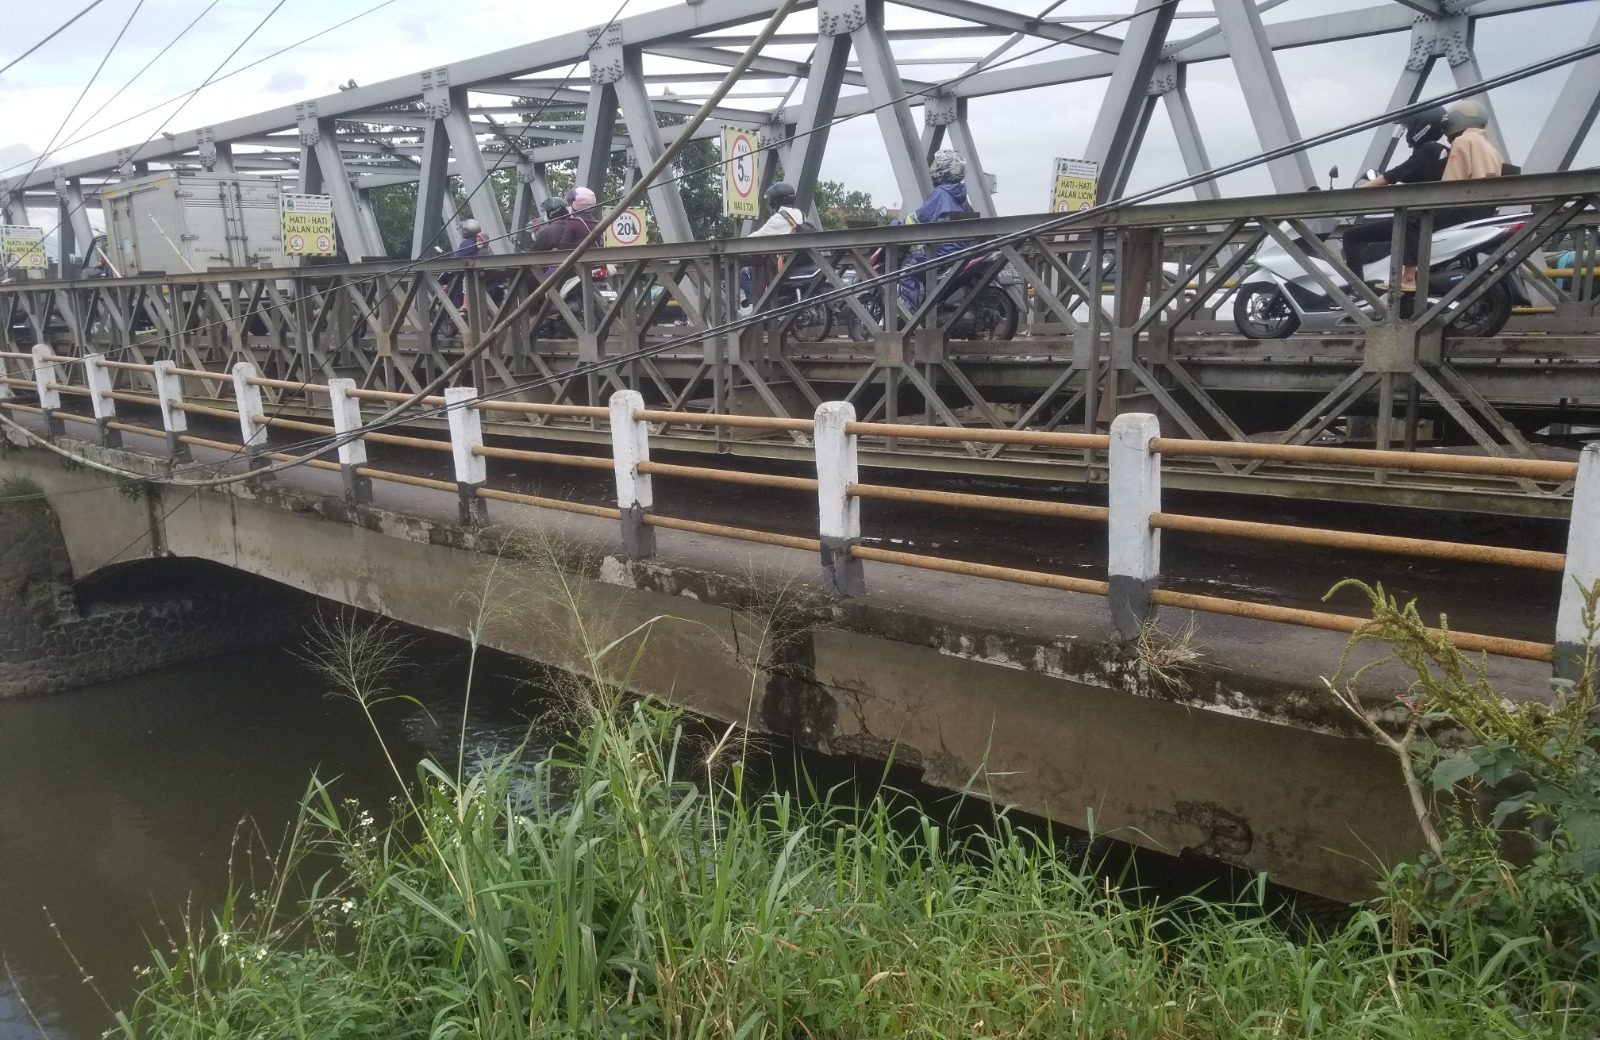 Jembatan Citarum penghubung Baleendah - Dayeuhkolot di Kabupaten Bandung, mulai terlihat retak di struktur bagian bawah jembatan